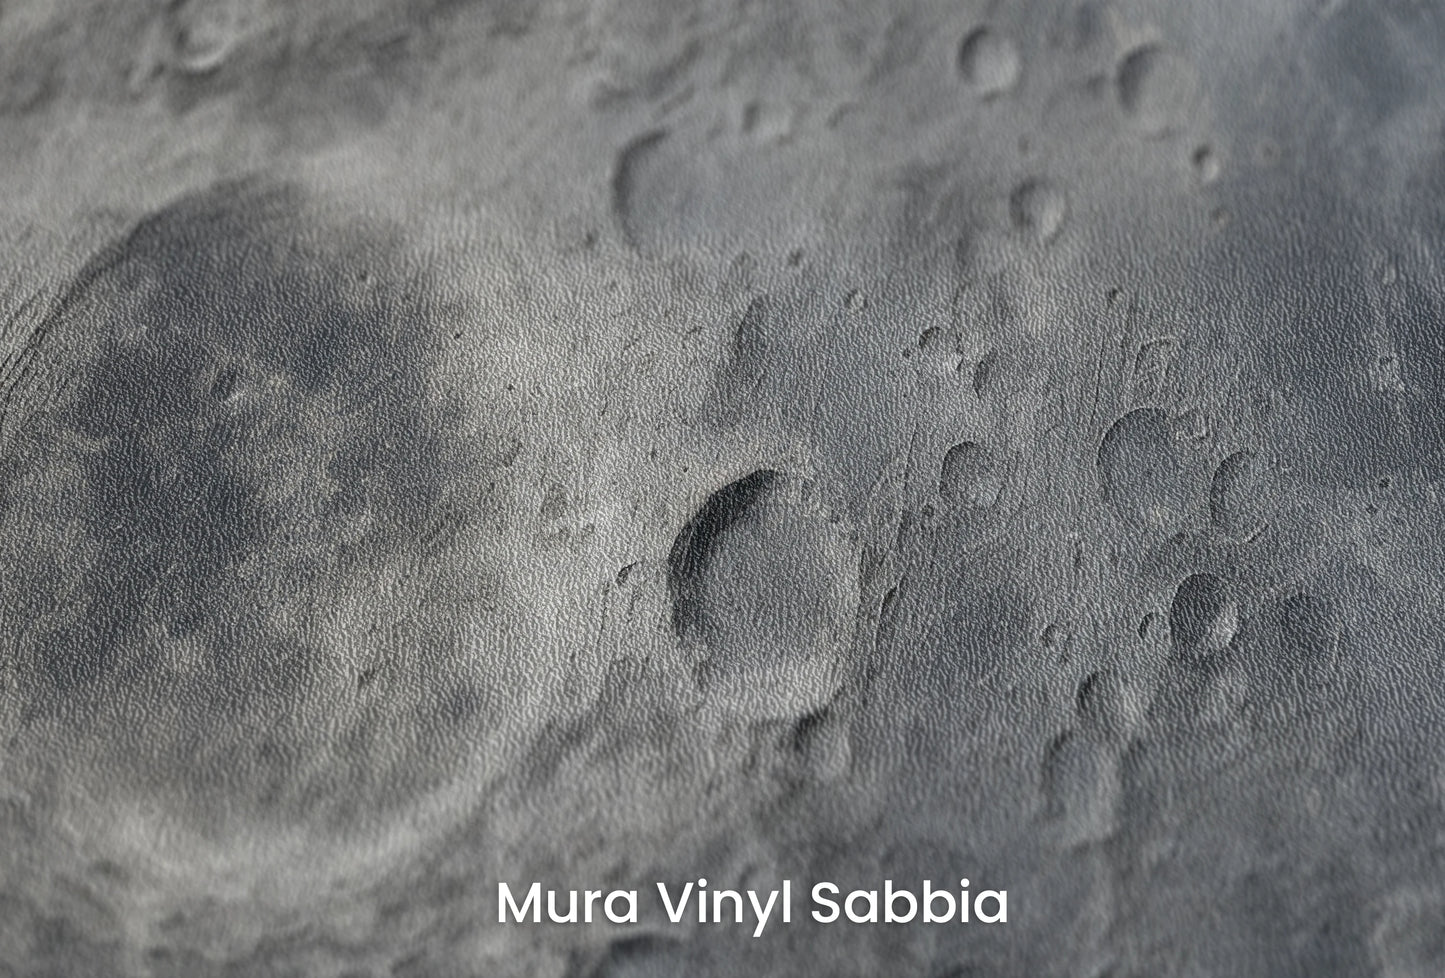 Zbliżenie na artystyczną fototapetę o nazwie Lunar Silence #2 na podłożu Mura Vinyl Sabbia struktura grubego ziarna piasku.